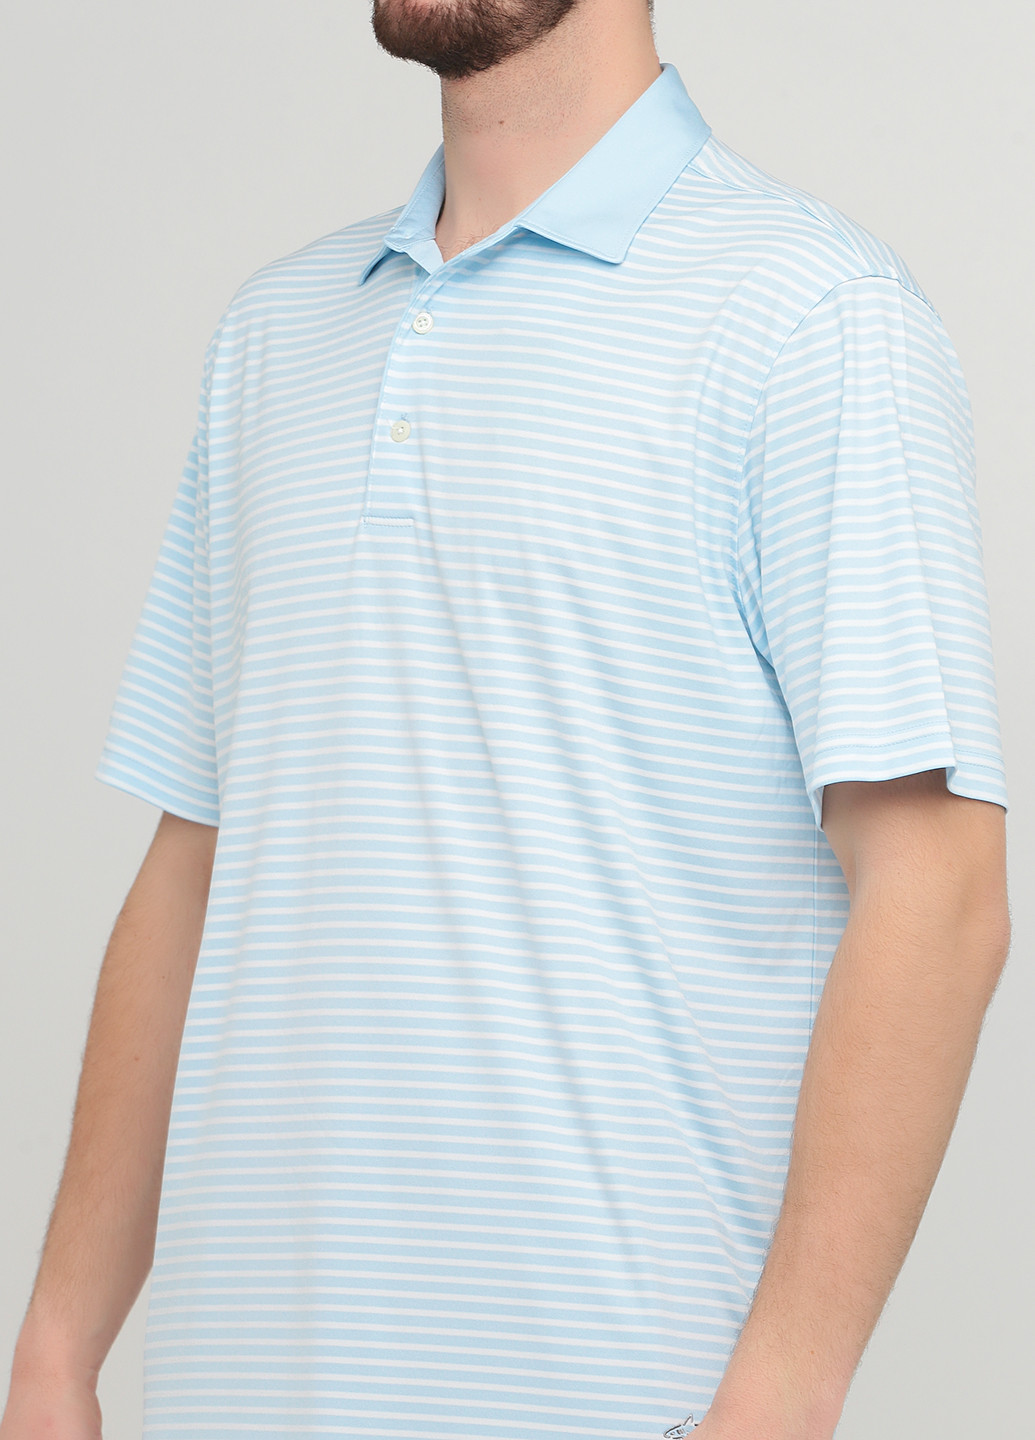 Светло-голубой футболка-поло для мужчин Greg Norman в полоску